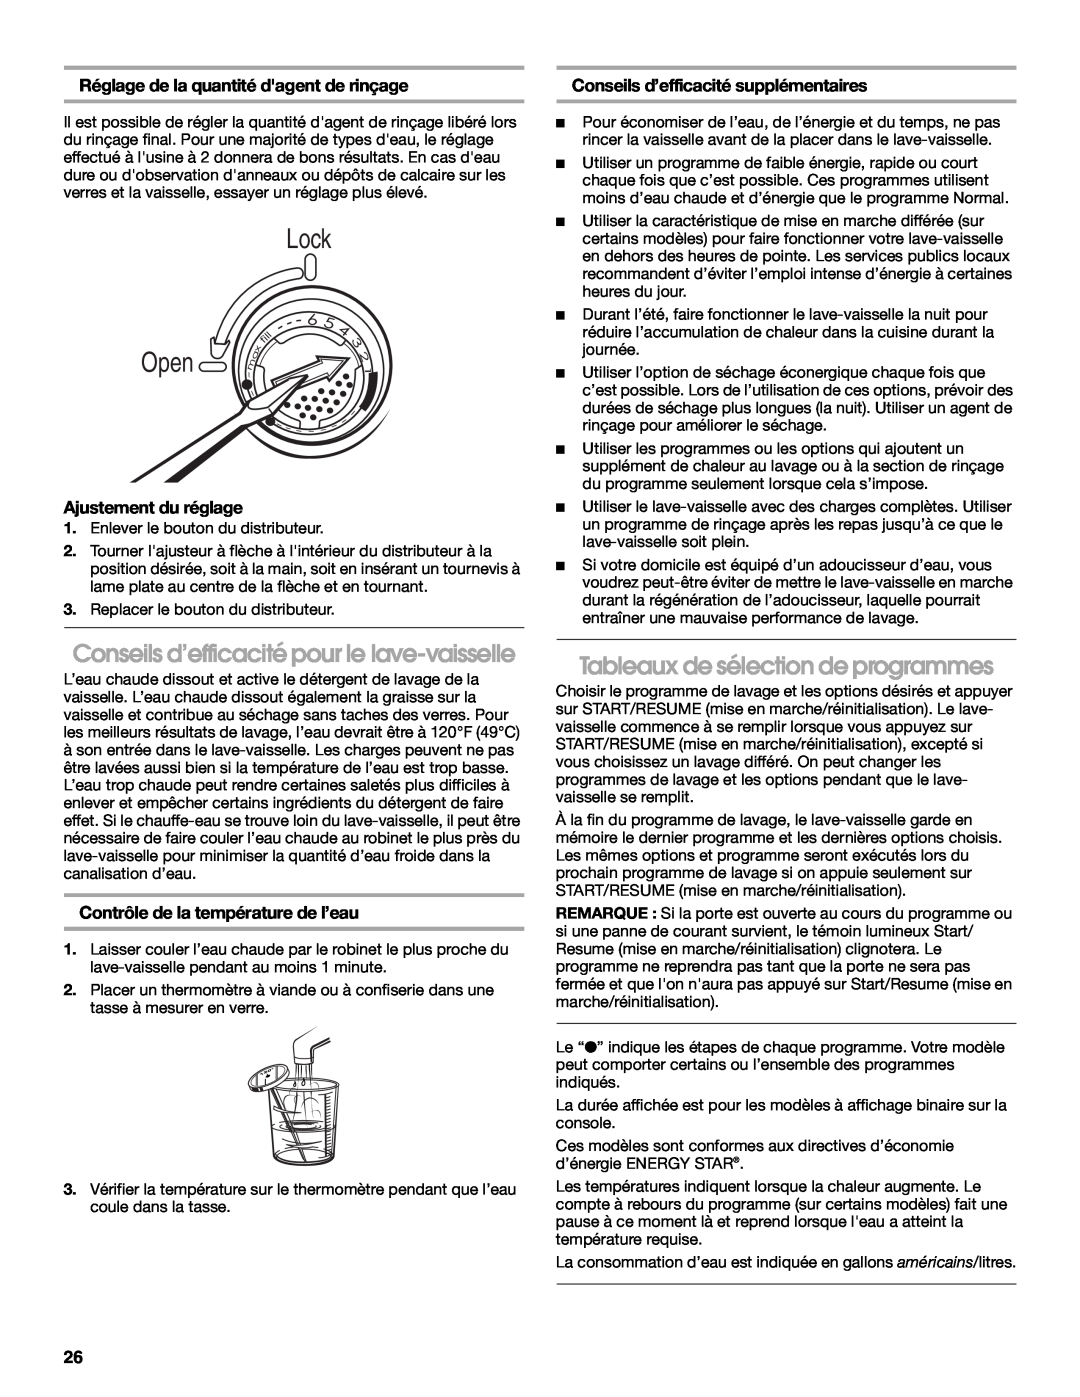 Roper RUD8050S Conseils d’efficacité pour le lave-vaisselle, Tableaux de sélection de programmes, Ajustement du réglage 